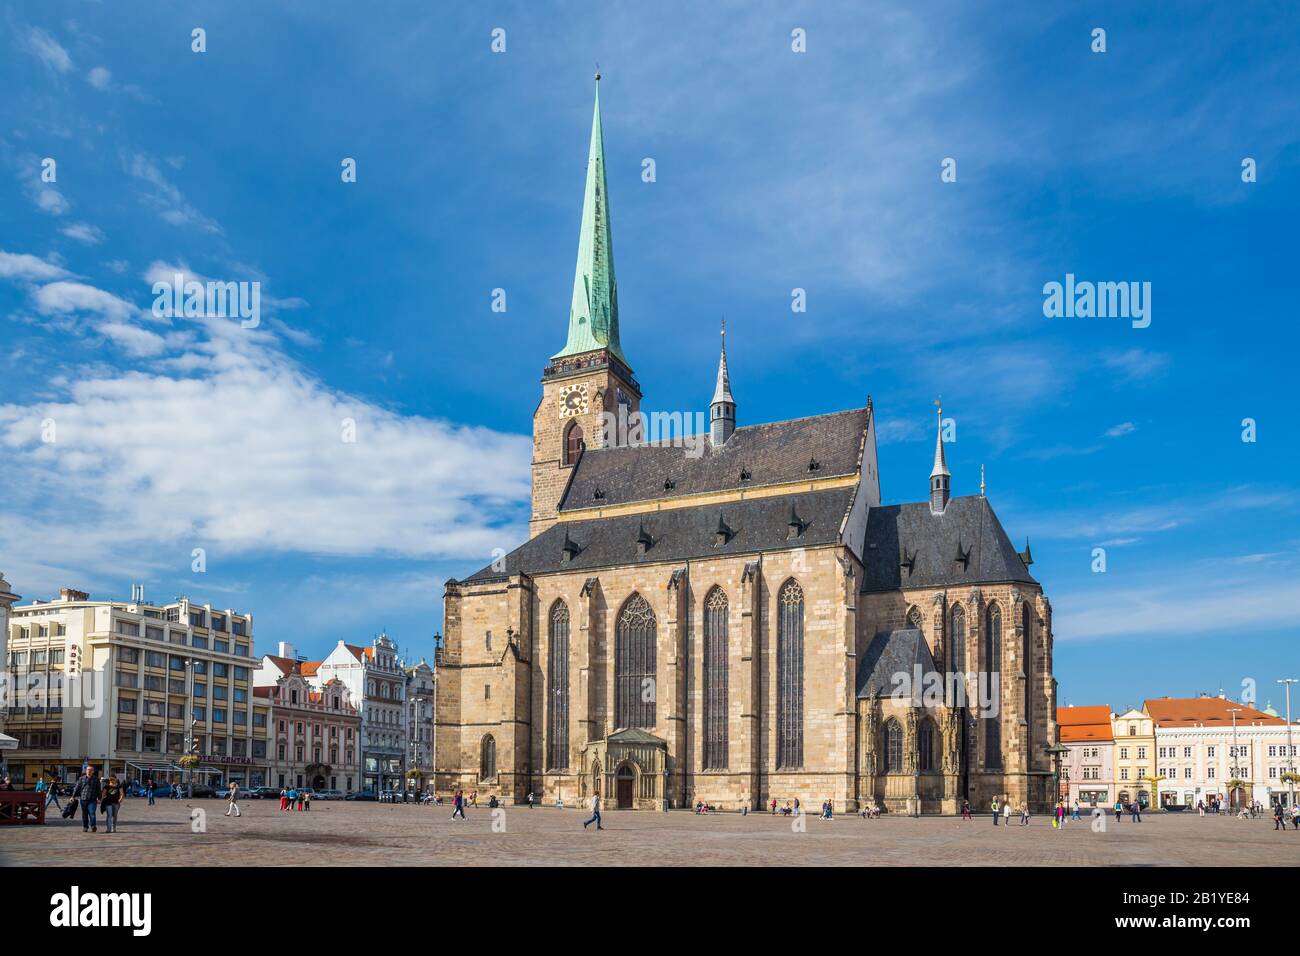 PLZEN, RÉPUBLIQUE TCHÈQUE, OCTOBRE 2018 - Cathédrale gothique Saint-Bartholomew dans la ville de Plzen, région de Bohême occidentale, république tchèque. Plzen a gagné le titre Banque D'Images